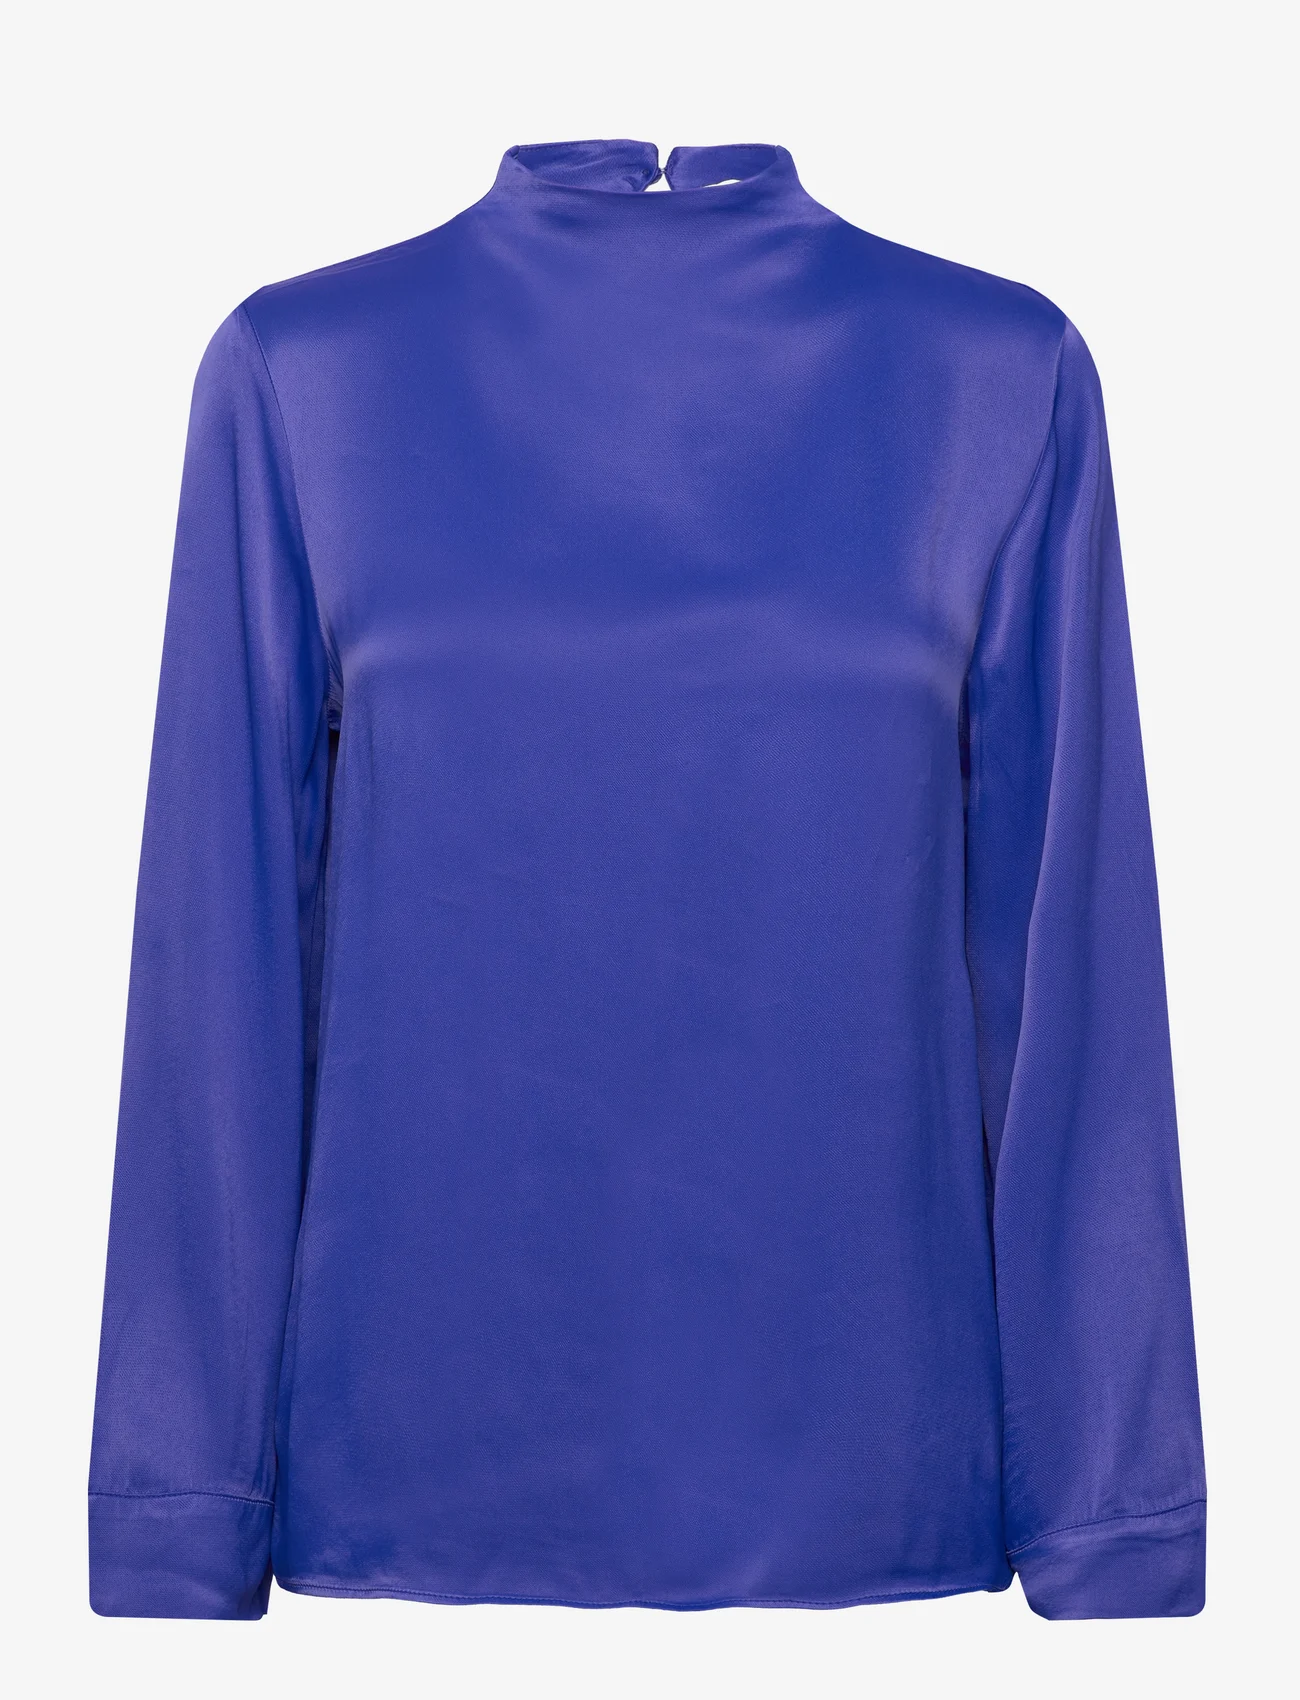 Tom Tailor - satin blouse - langærmede bluser - crest blue - 0